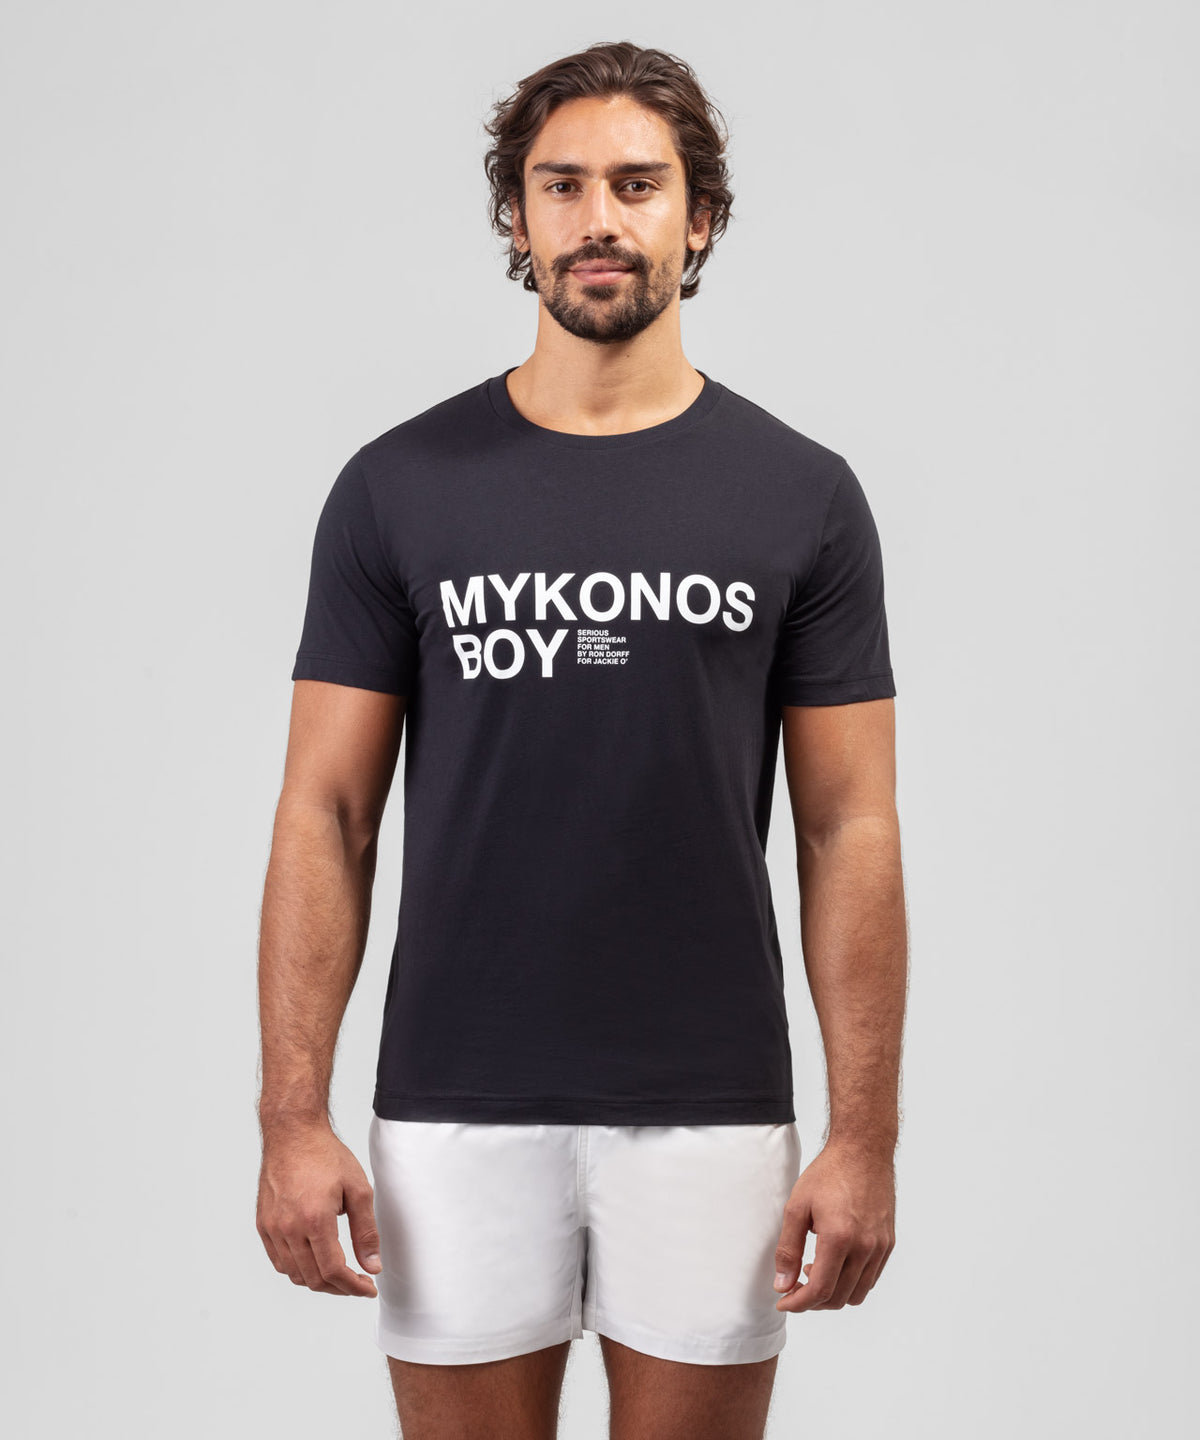 T-shirt en coton organique à imprimé MYKONOS BOY: Noir